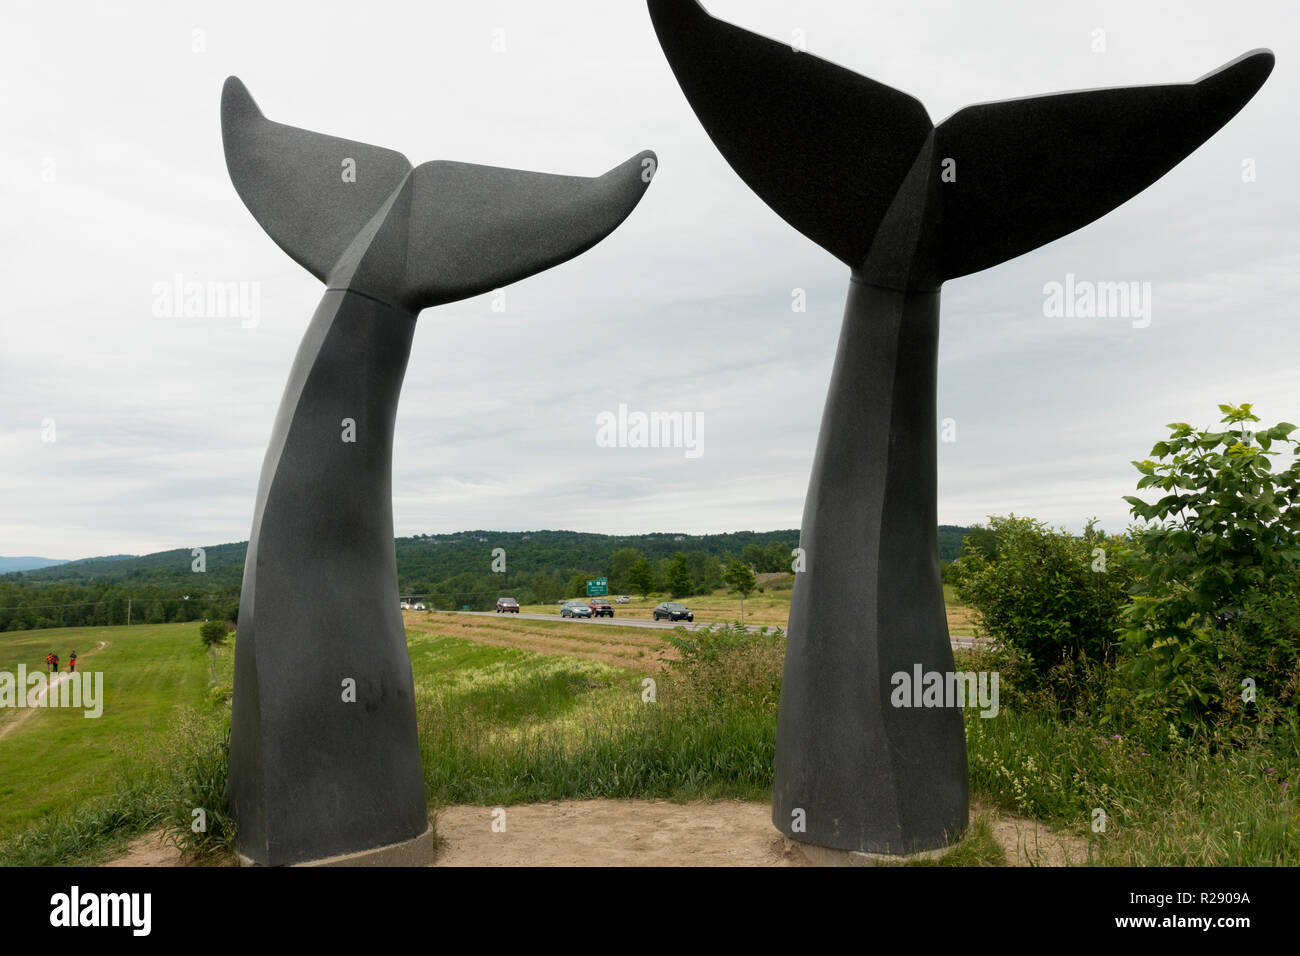 Whales Trails sculpture walking path Burlington Vermont Stock Photo